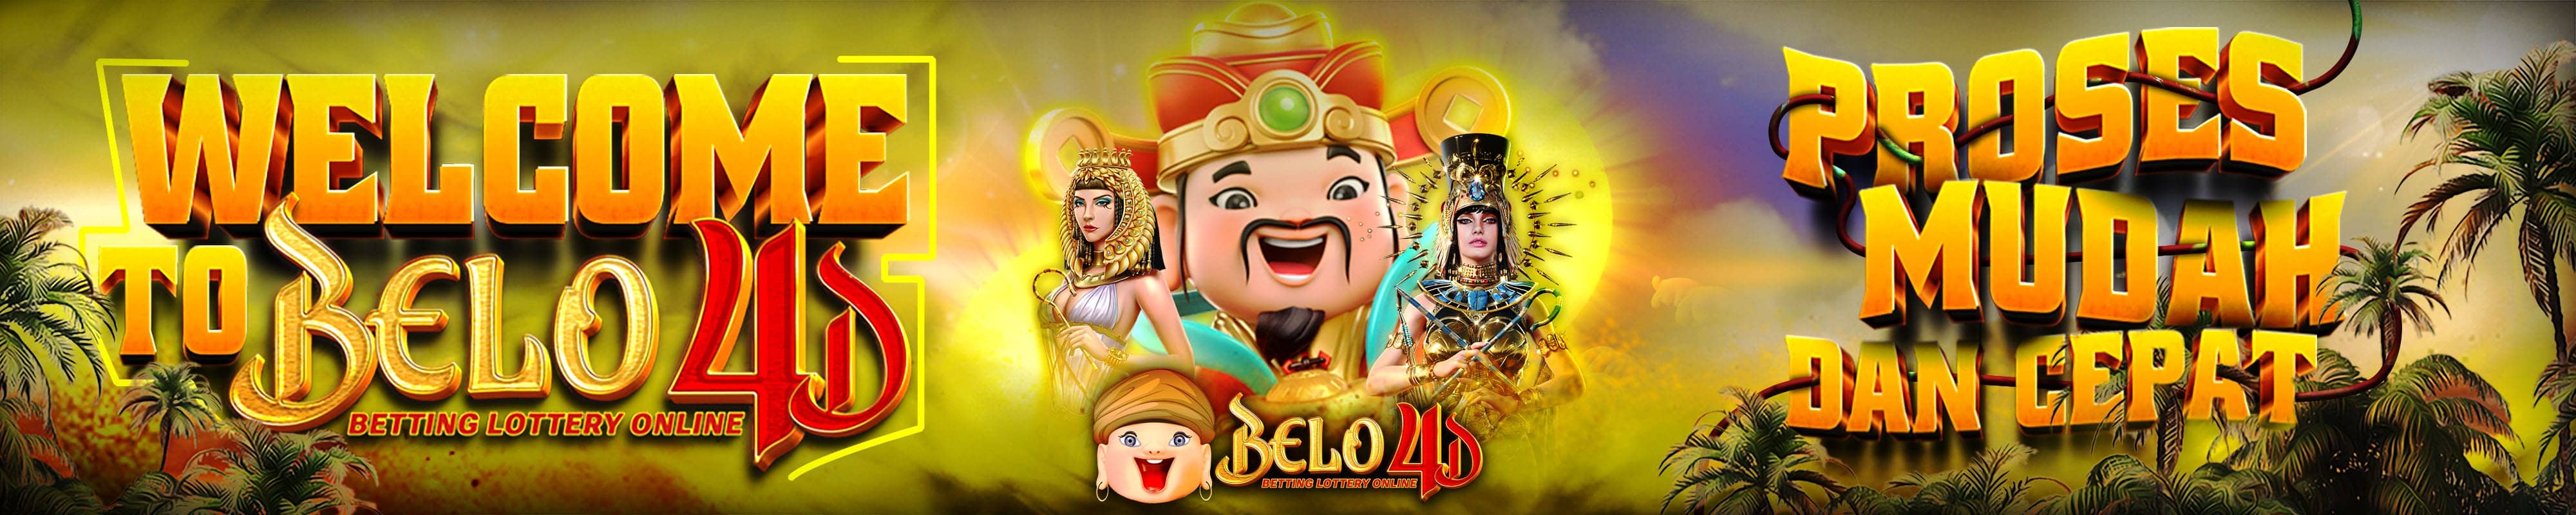 Welcome Belo4d